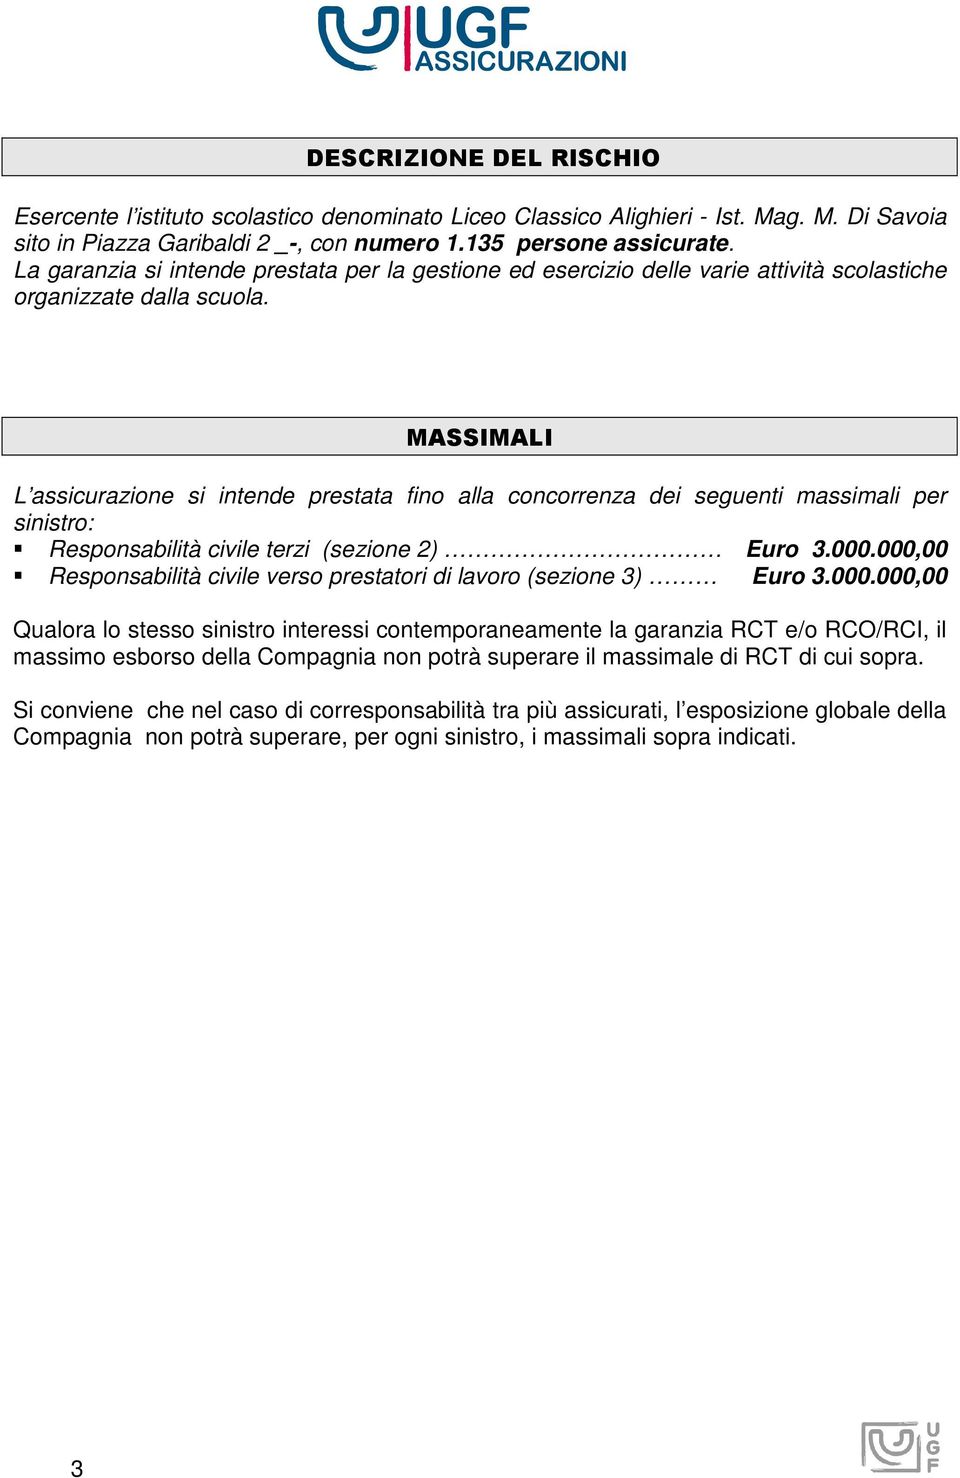 MASSIMALI L assicurazione si intende prestata fino alla concorrenza dei seguenti massimali per sinistro: Responsabilità civile terzi (sezione 2) Euro 3.000.